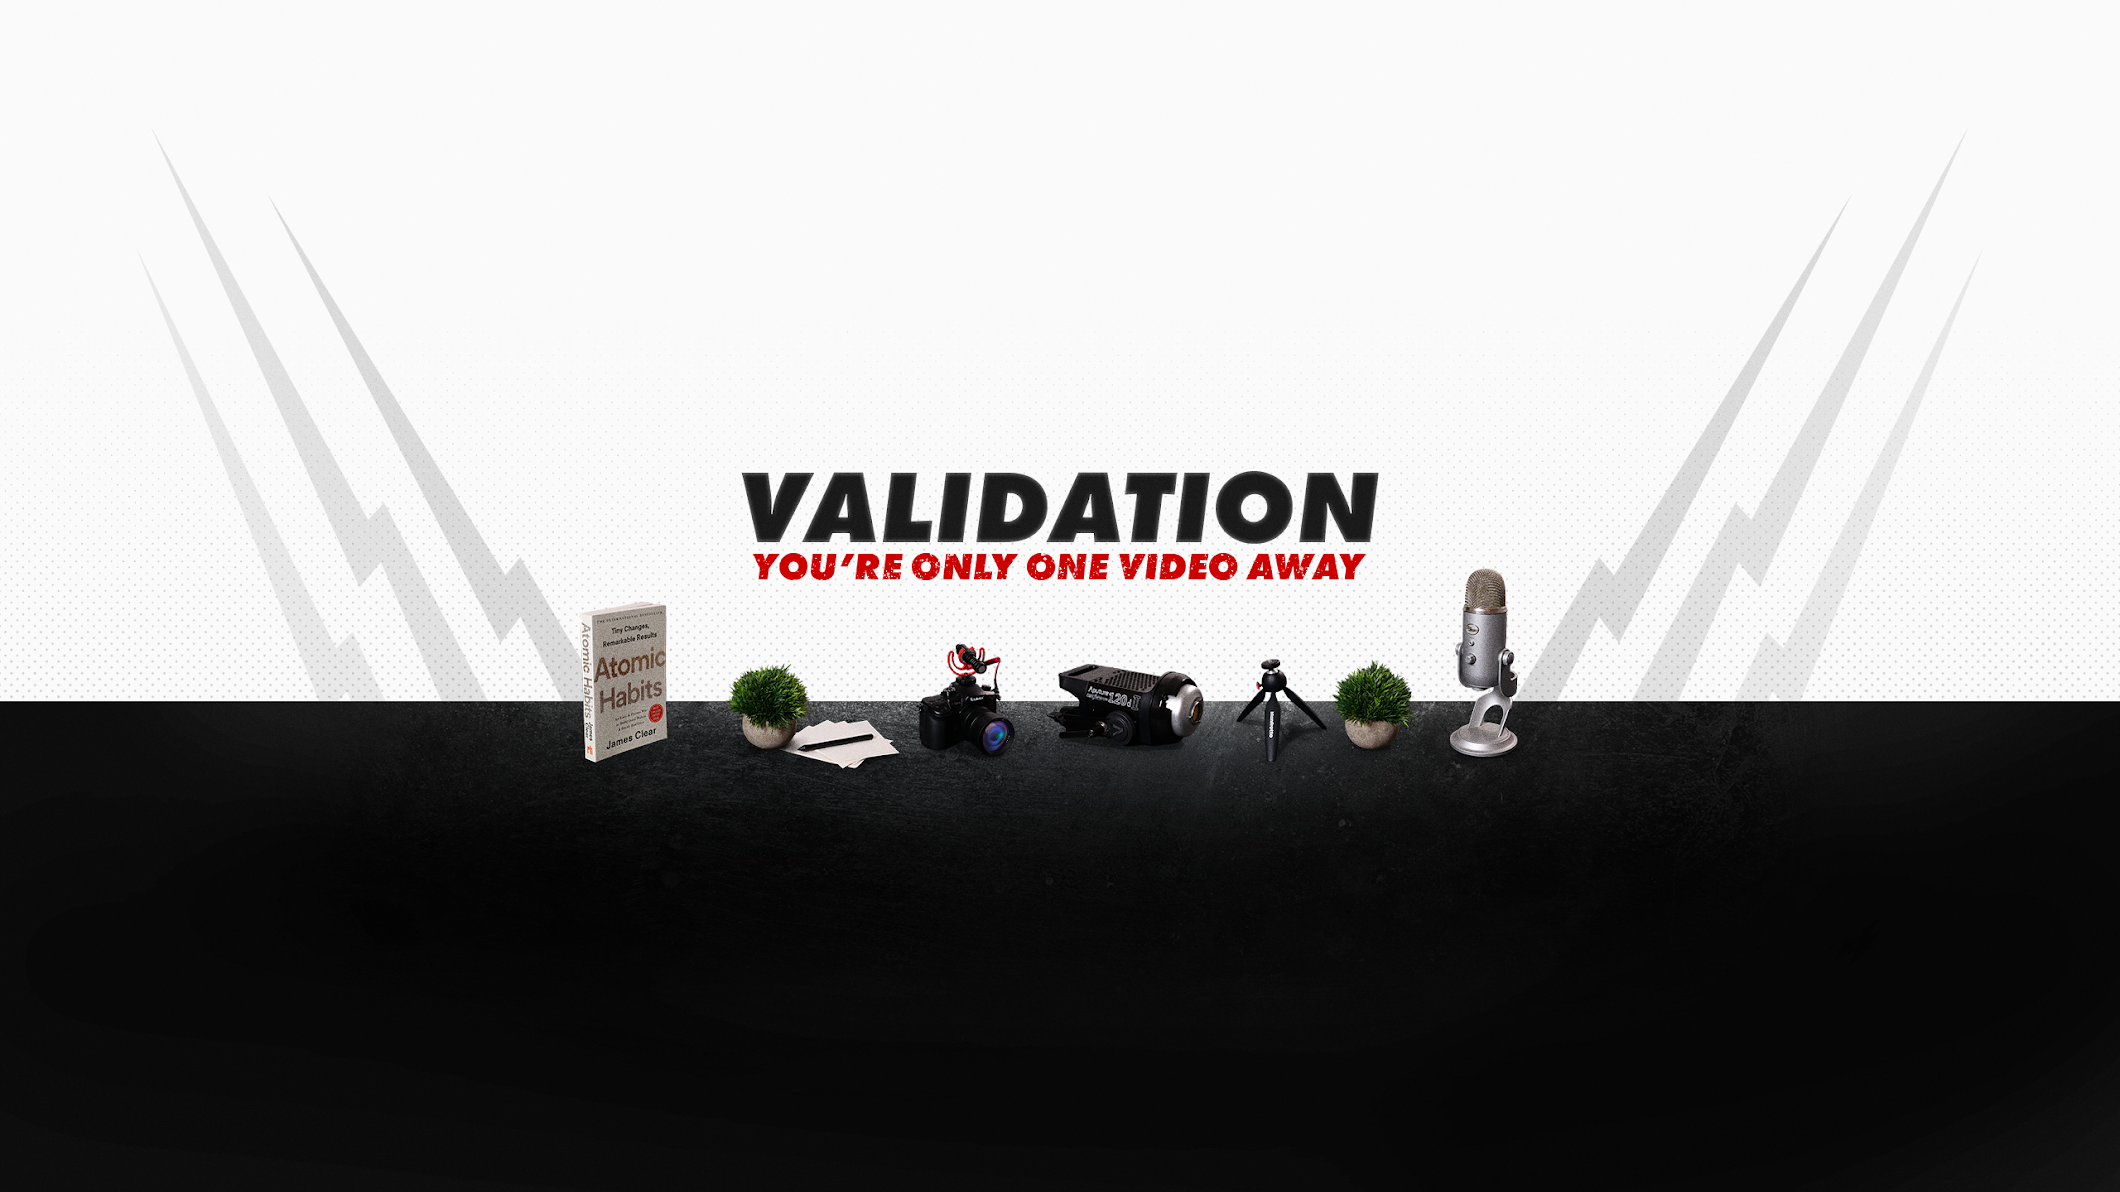 Validation